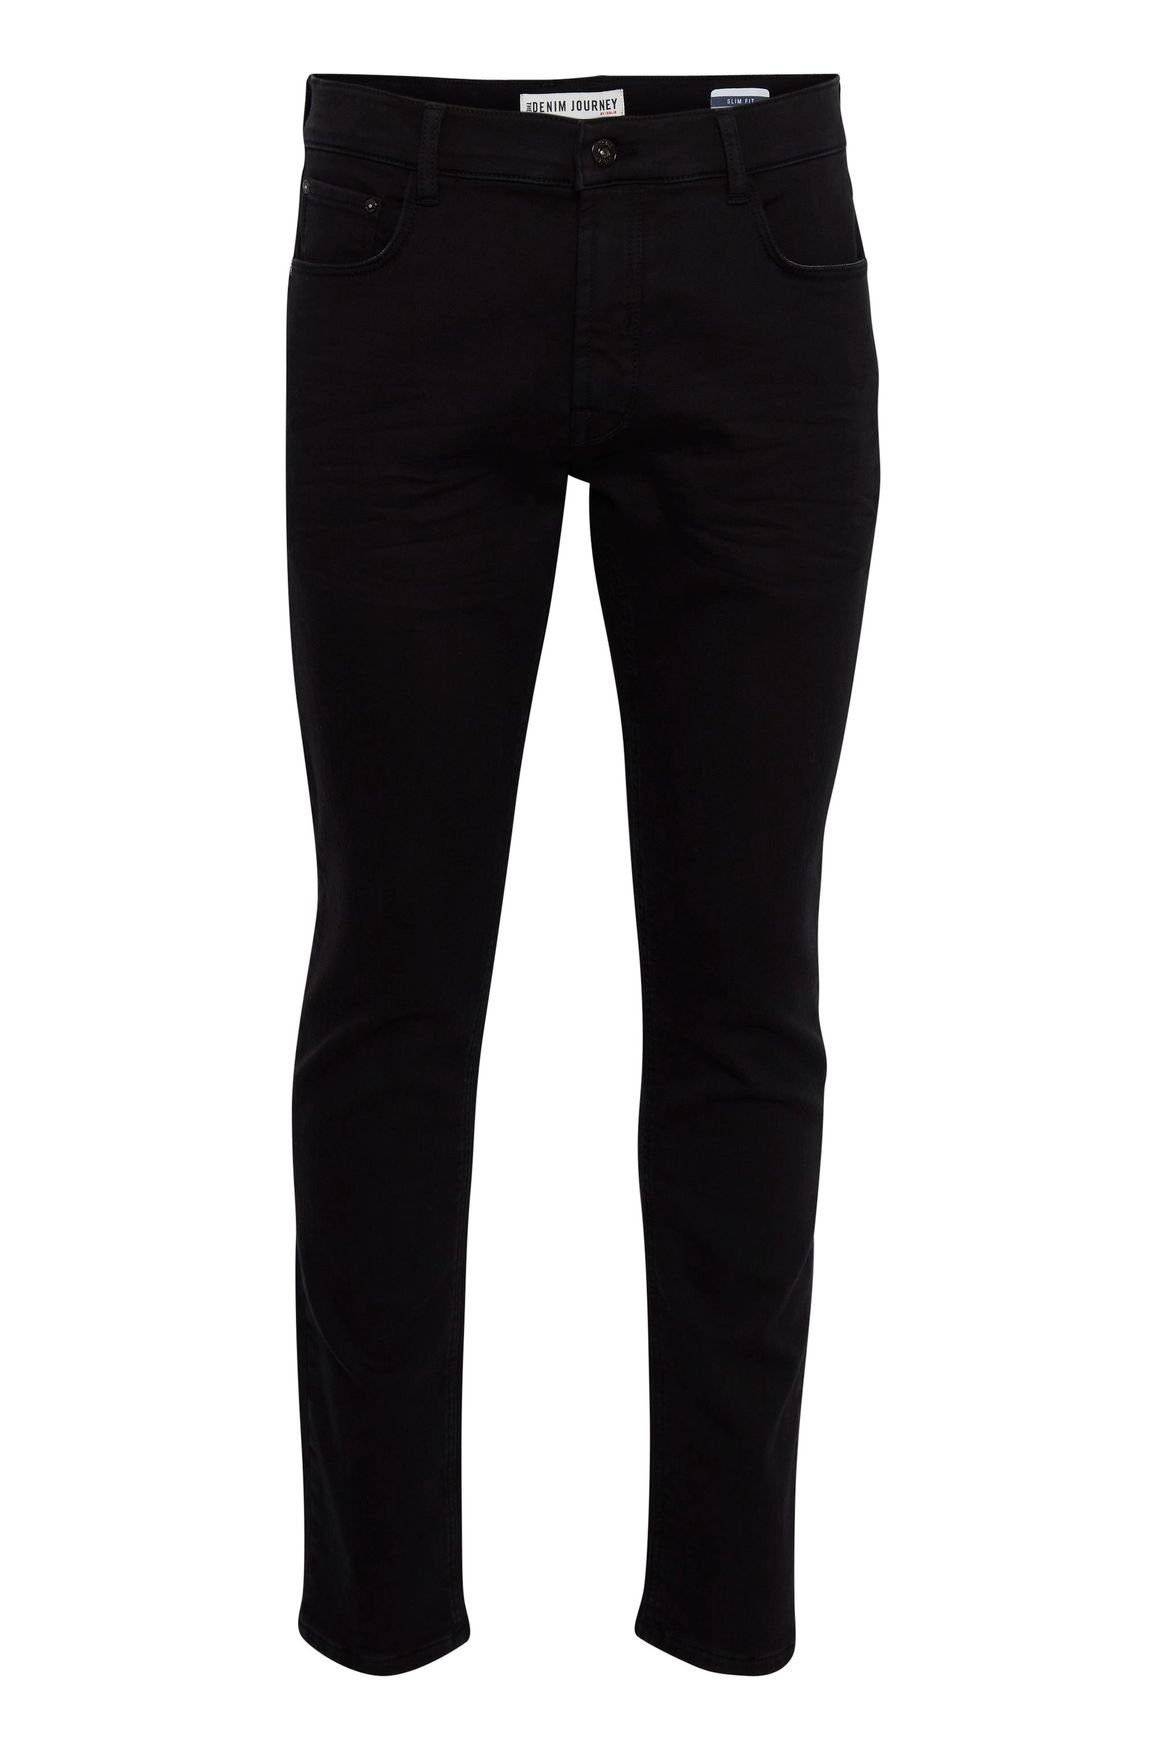 !Solid Denim Basic Schwarz Fit SDTot Pants in Slim Black (1-tlg) Jeans 4121 Slim-fit-Jeans